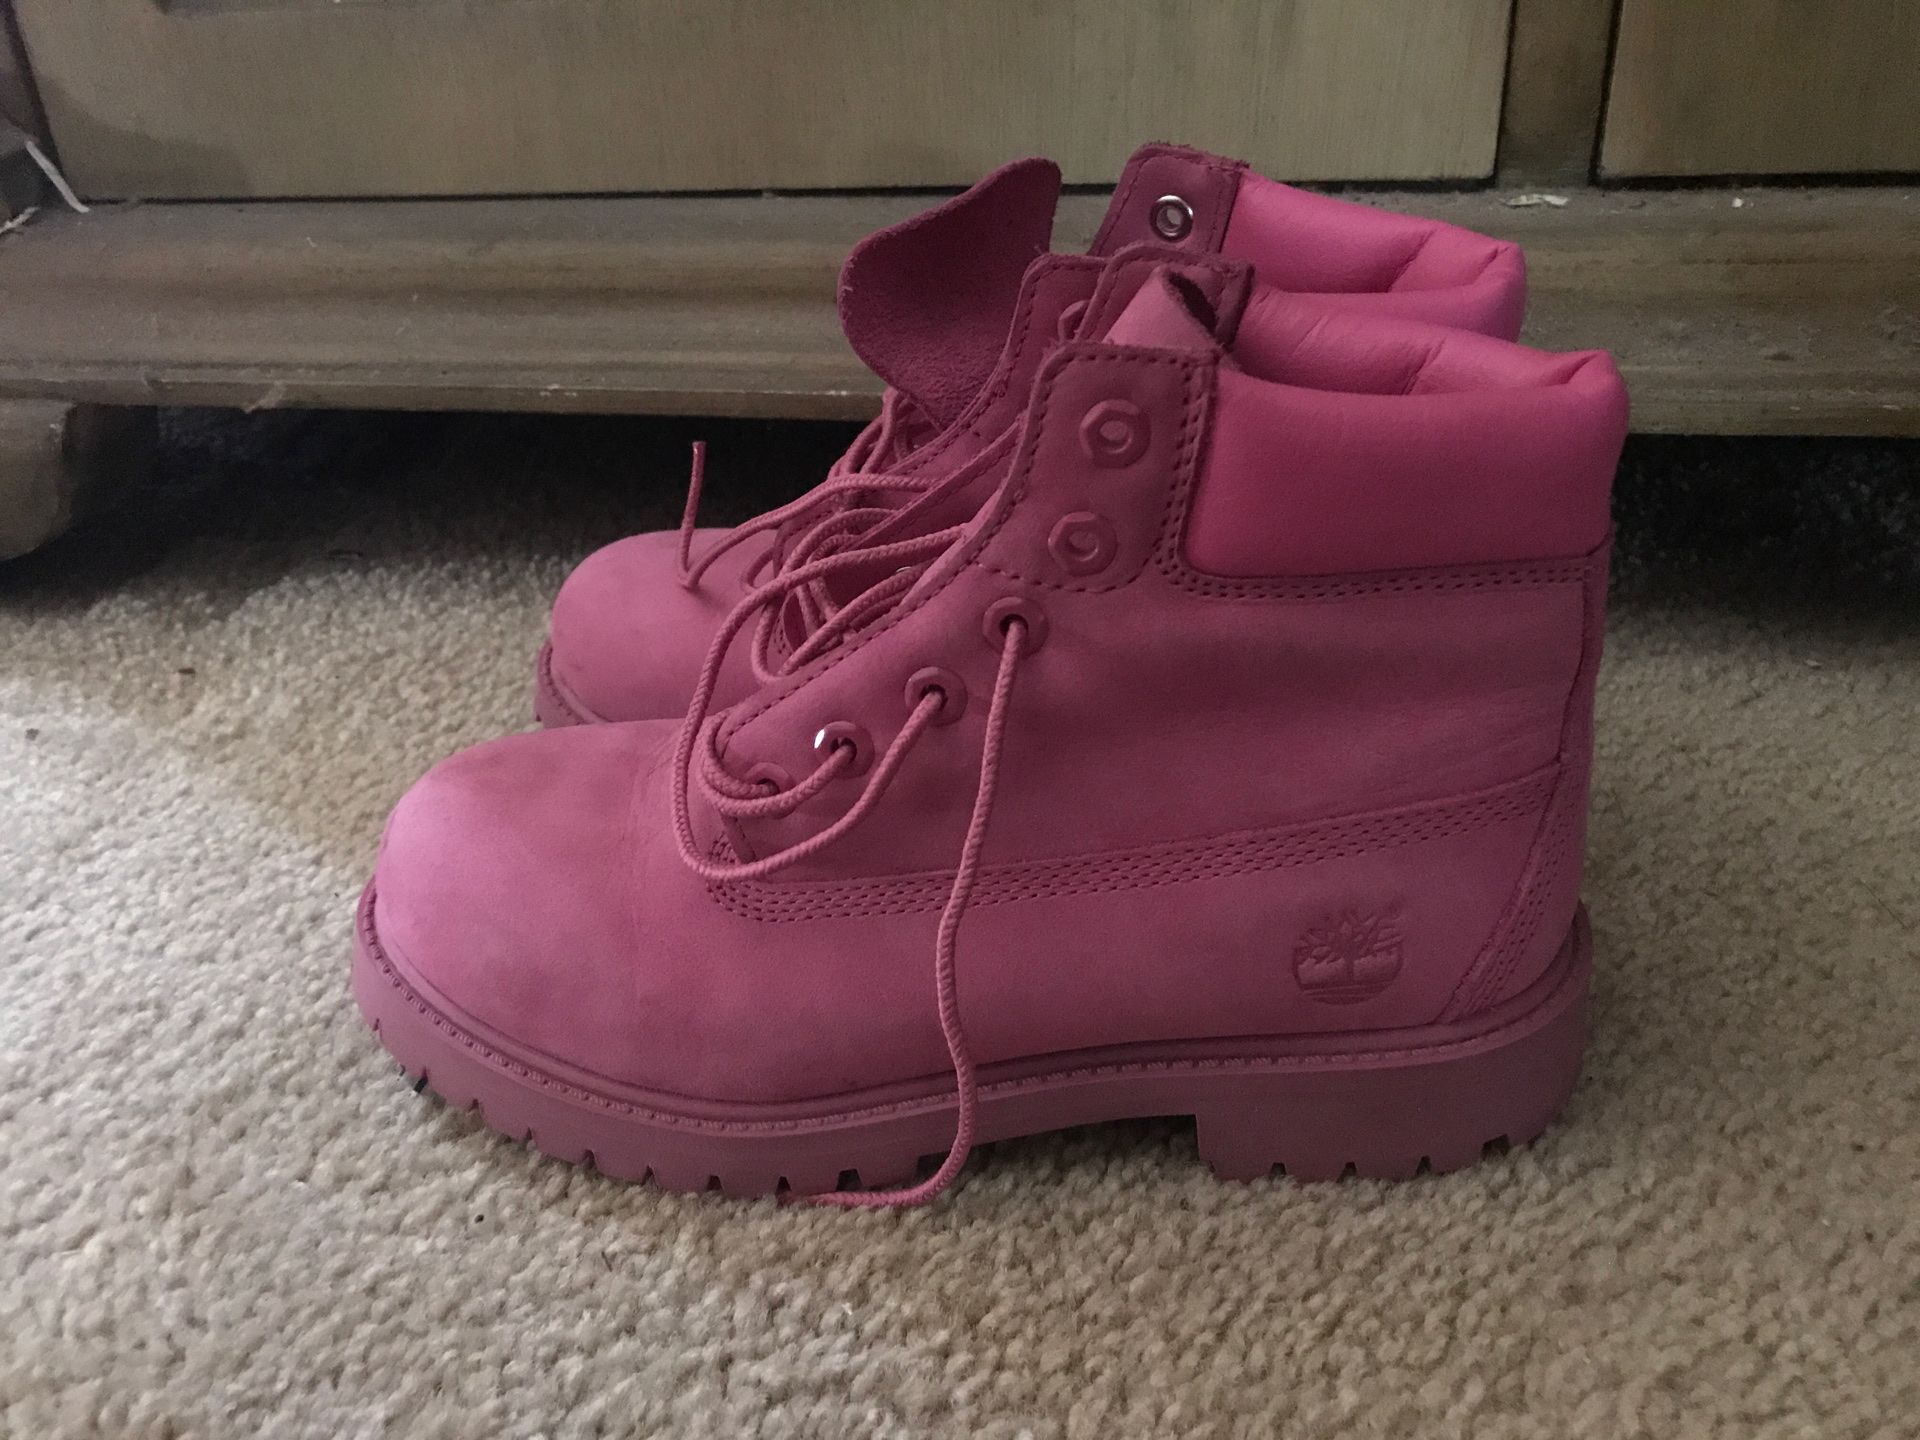 Timberland Pink Waterproof Boots Girls Size 2.5